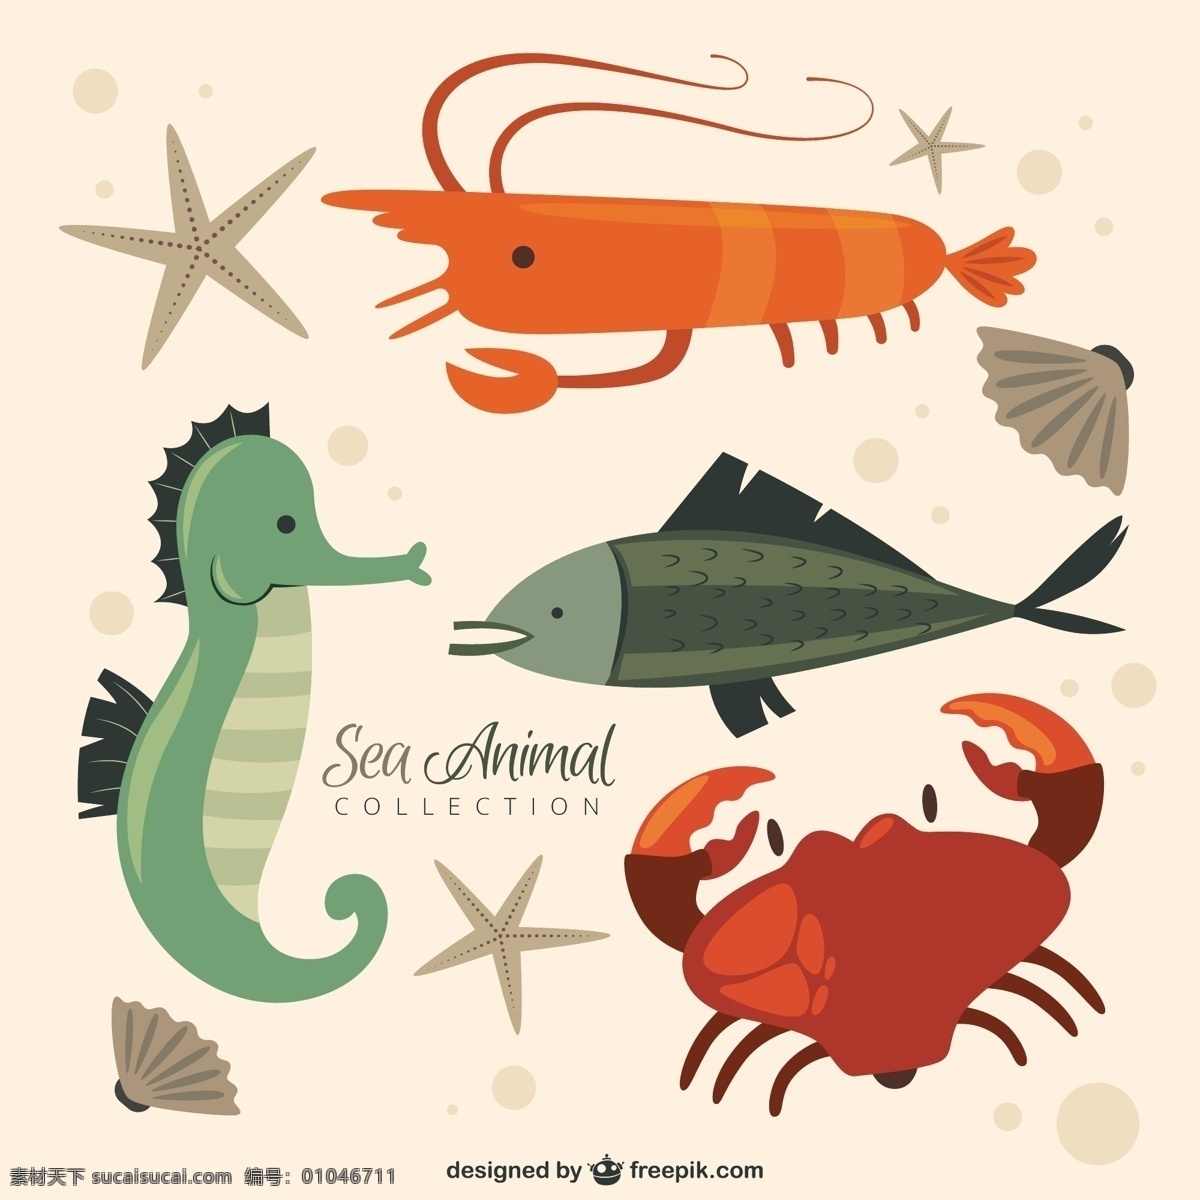 尼斯 海洋 动物 系列 自然 鱼类 可爱 有趣 贝壳 可爱的动物 螃蟹 野生动物 收藏 漂亮 对虾 海洋动物